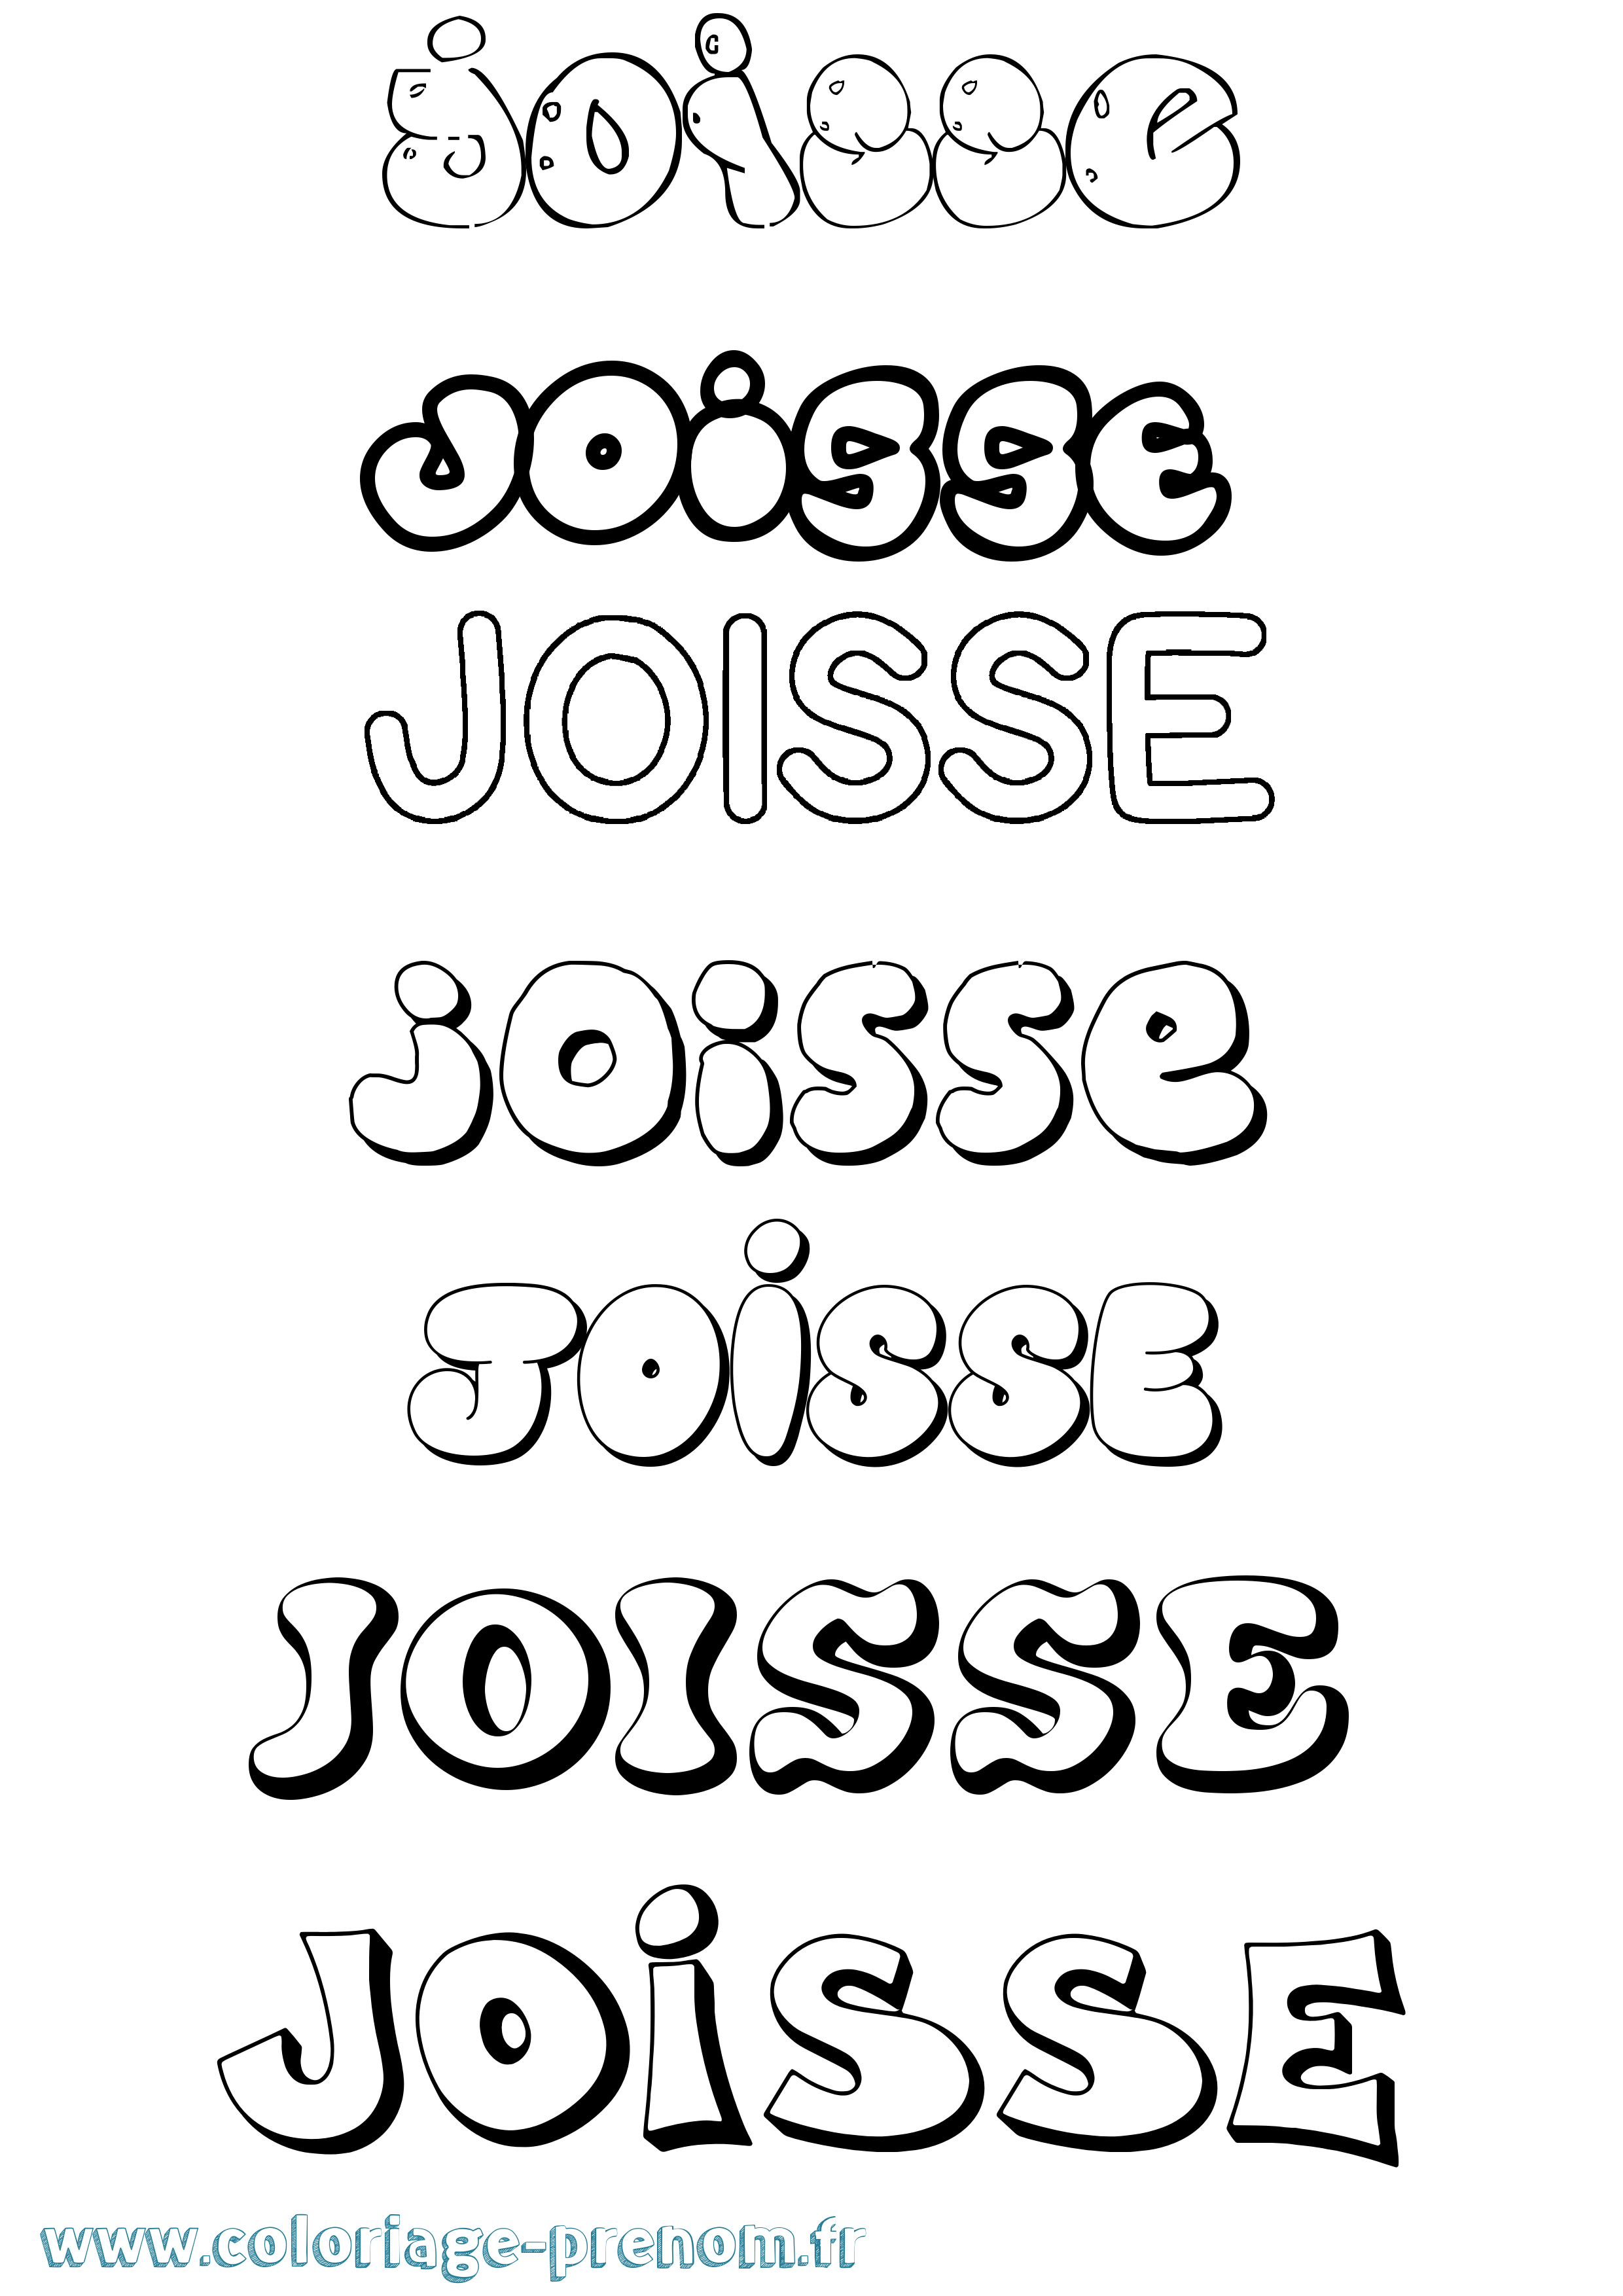 Coloriage prénom Joisse Bubble